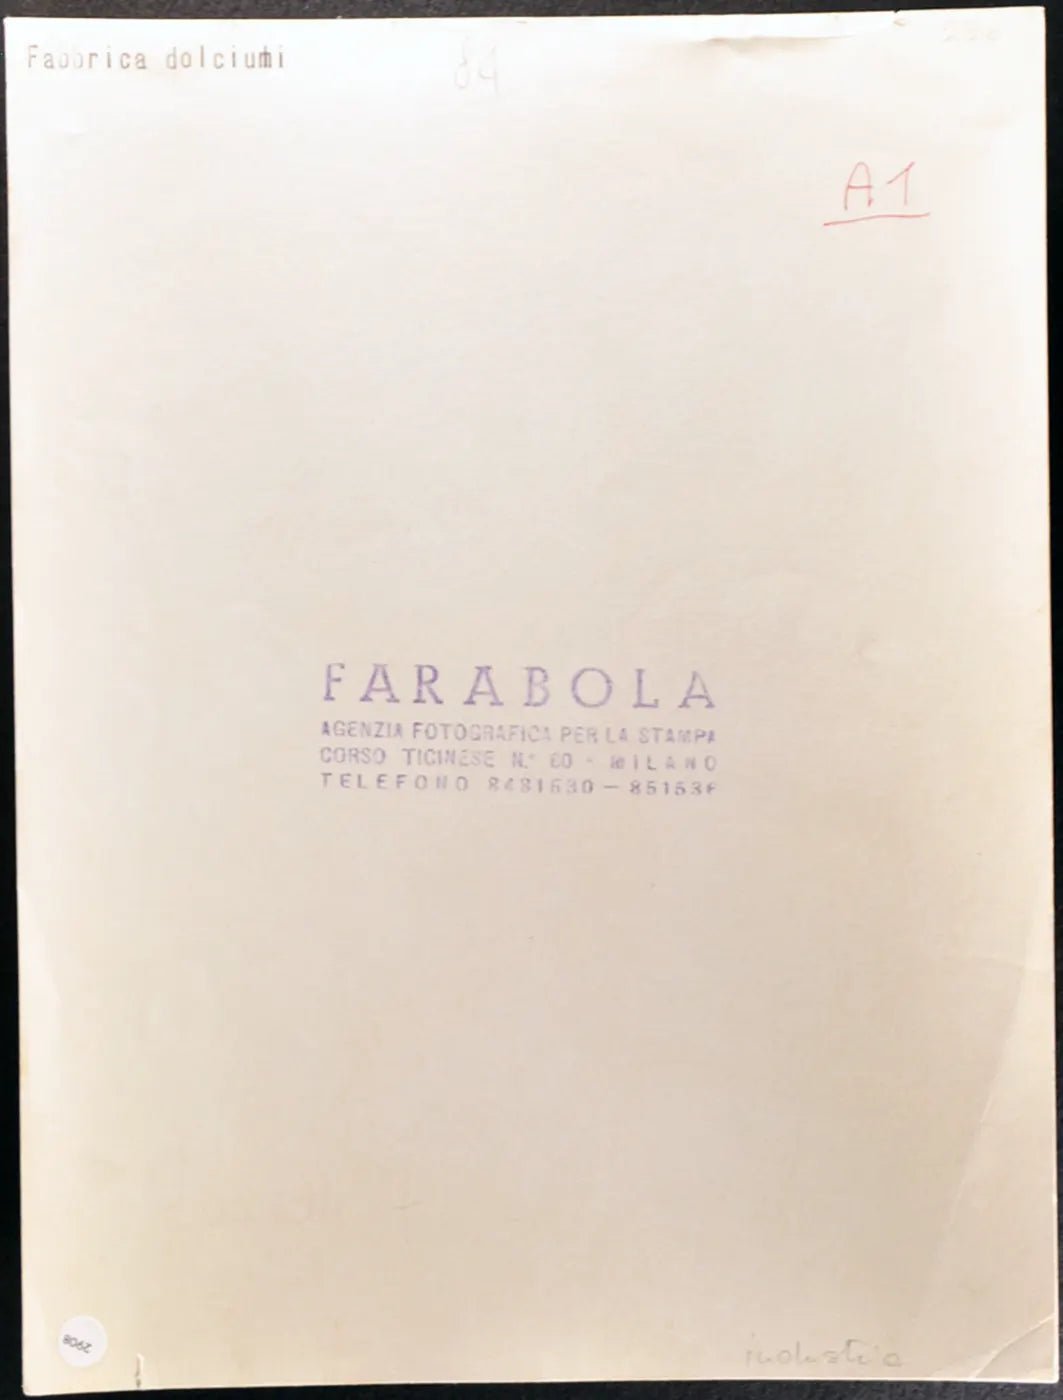 Fabbrica di dolciumi anni 60 Ft 2908 - Stampa 21x27 cm - Farabola Stampa ai sali d'argento